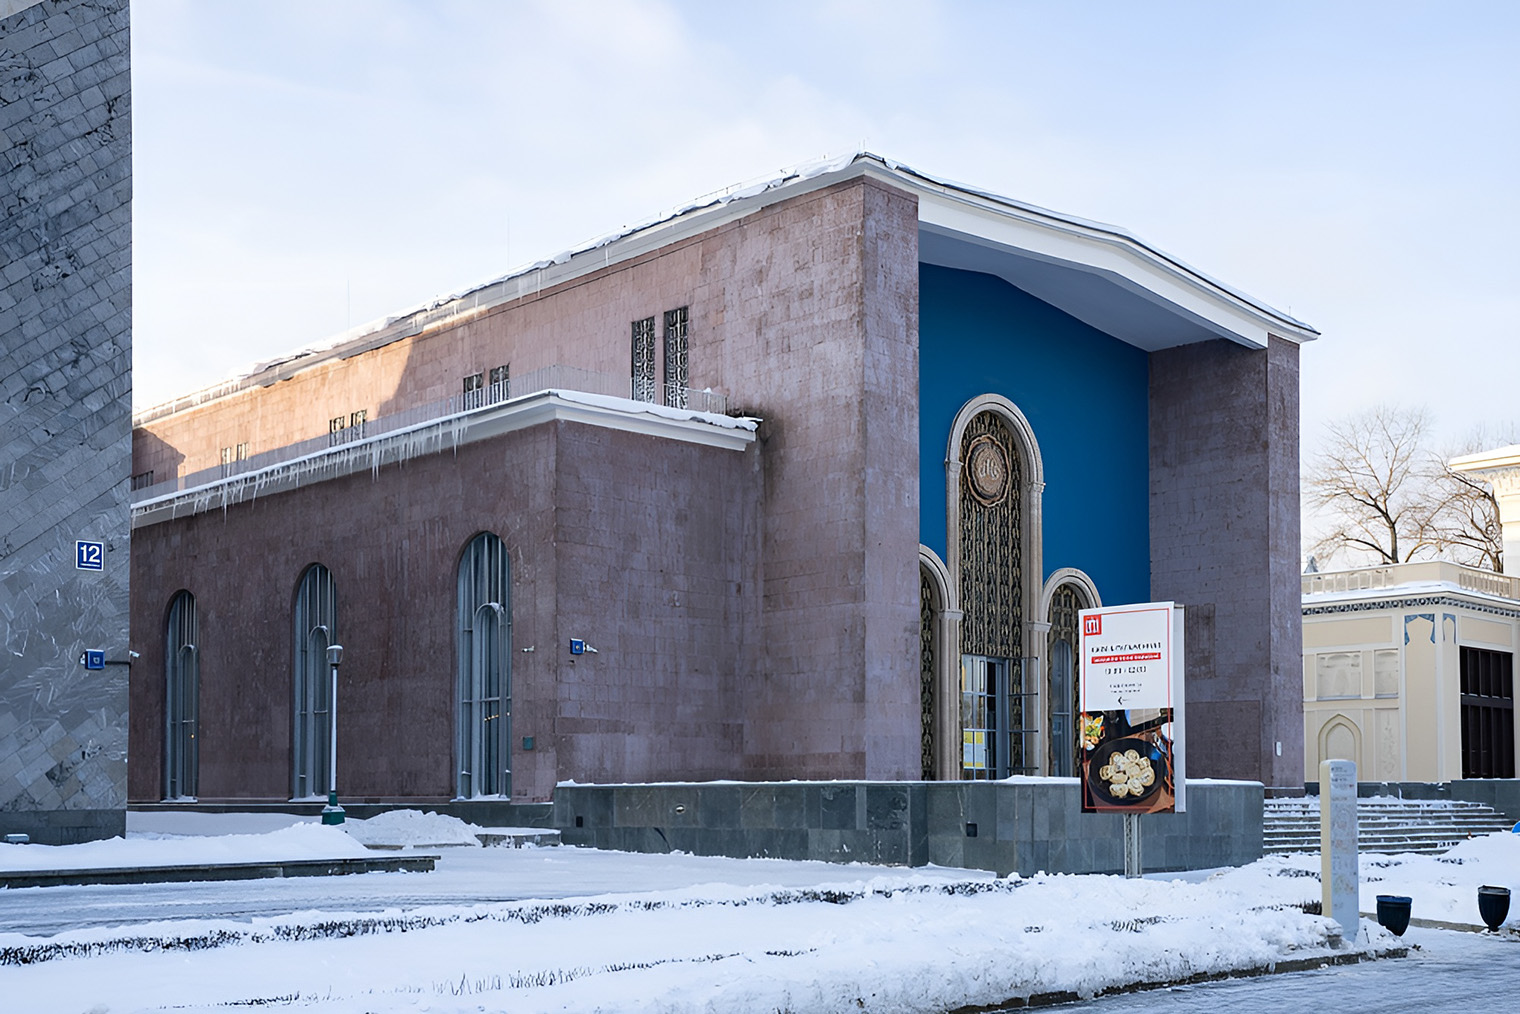 Музей Рерихов находится в павильоне № 13, который украшен восточными орнаментами. Источник: vdnh.ru